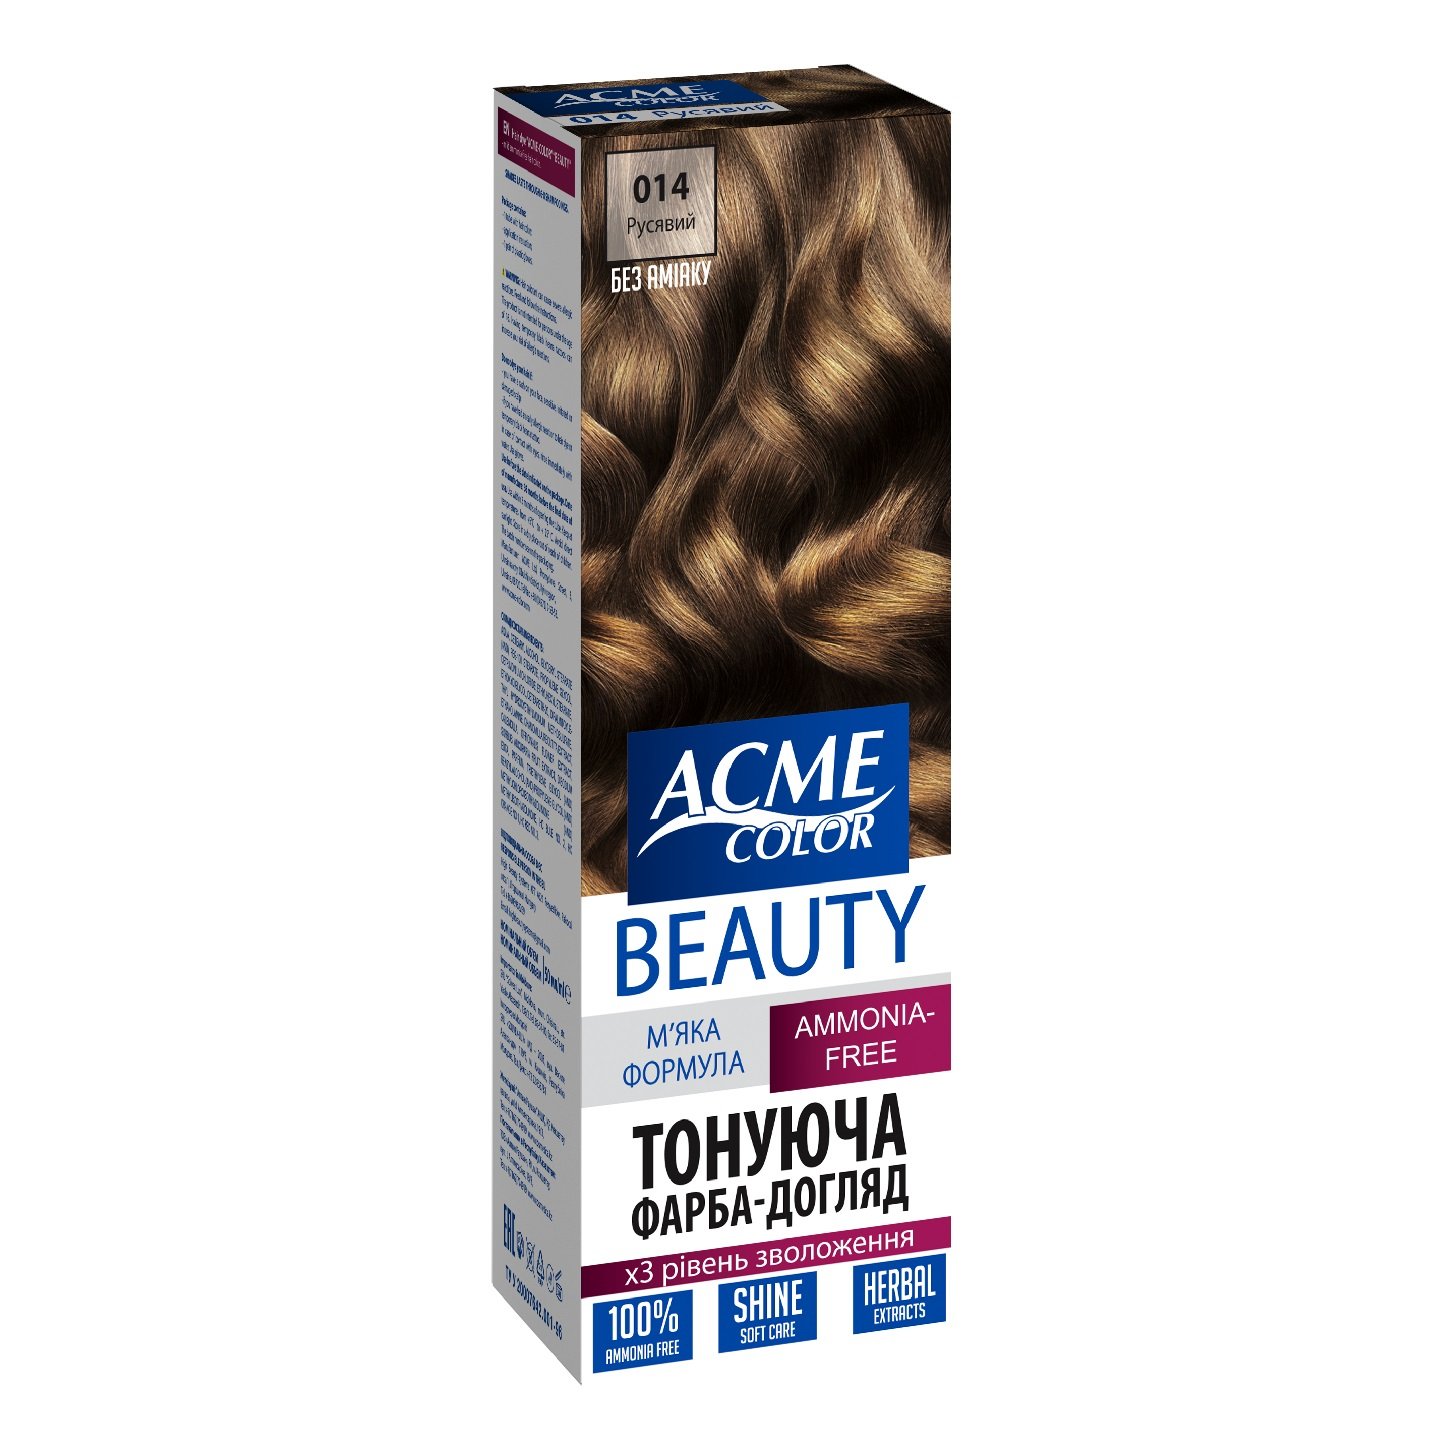 Гель-фарба для волосся Acme-color Beauty, відтінок 014 (Русявий), 69 г - фото 1